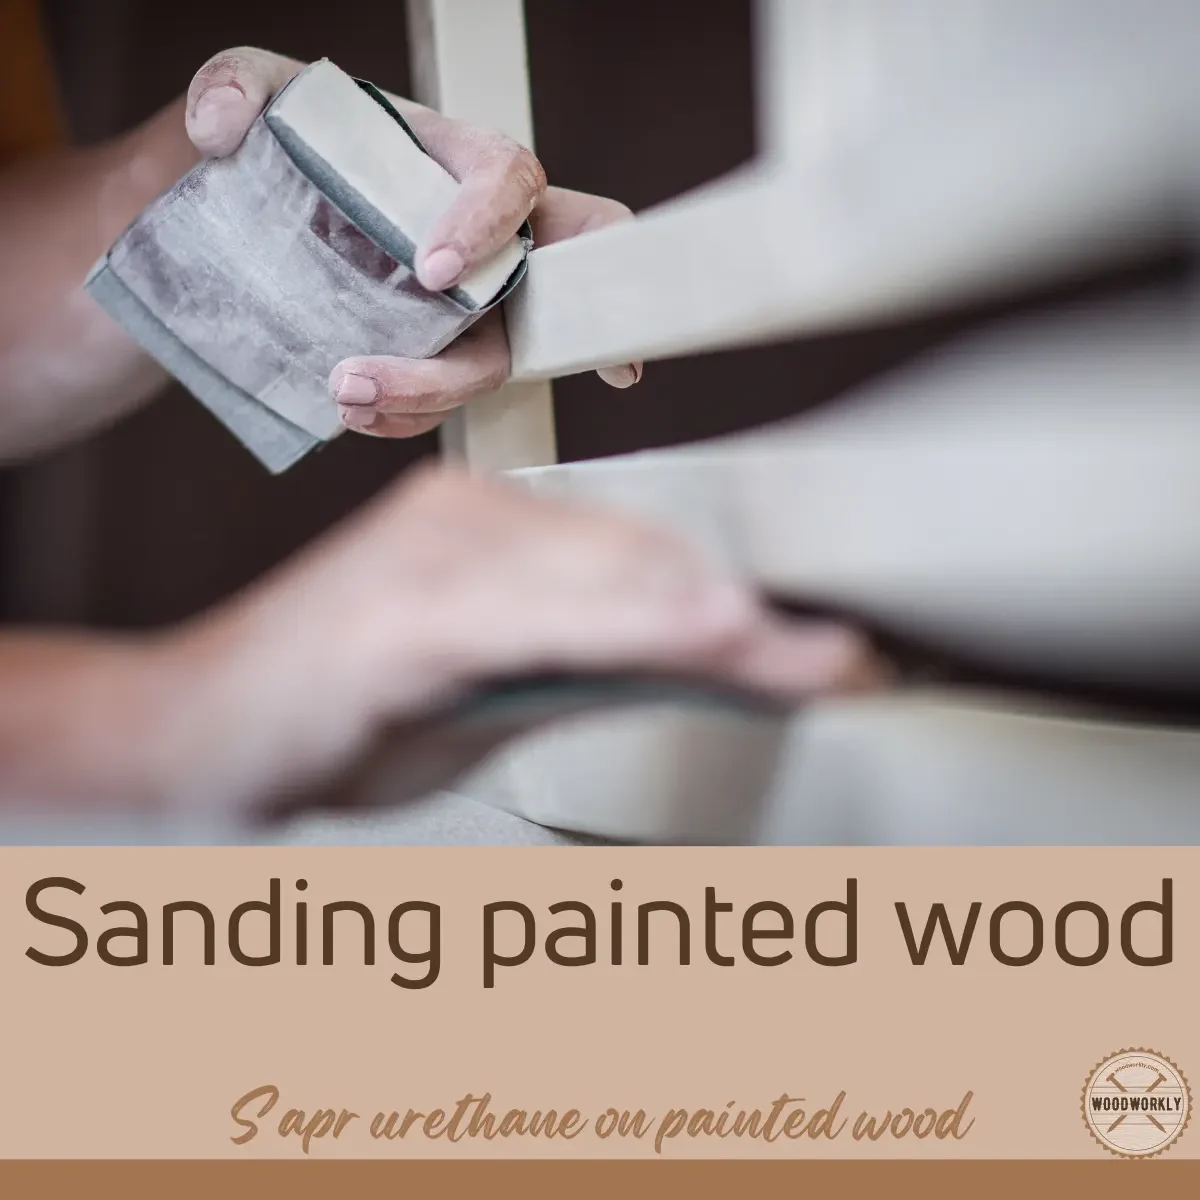 Sanding painted wood